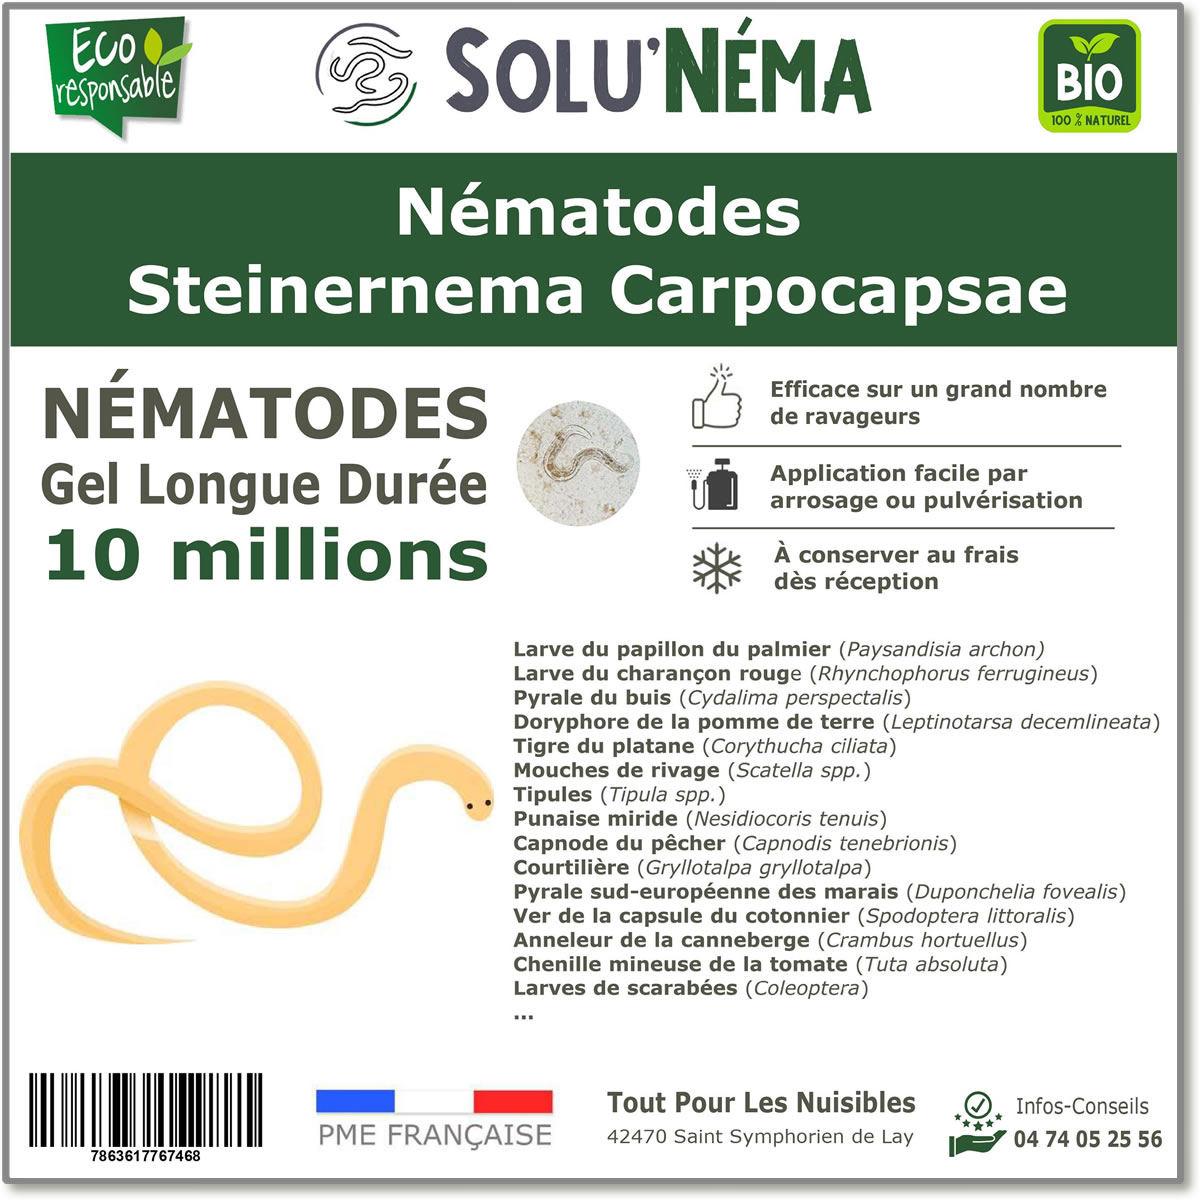 10 Millions de nématodes Steinernema Carpocapsae (SC)